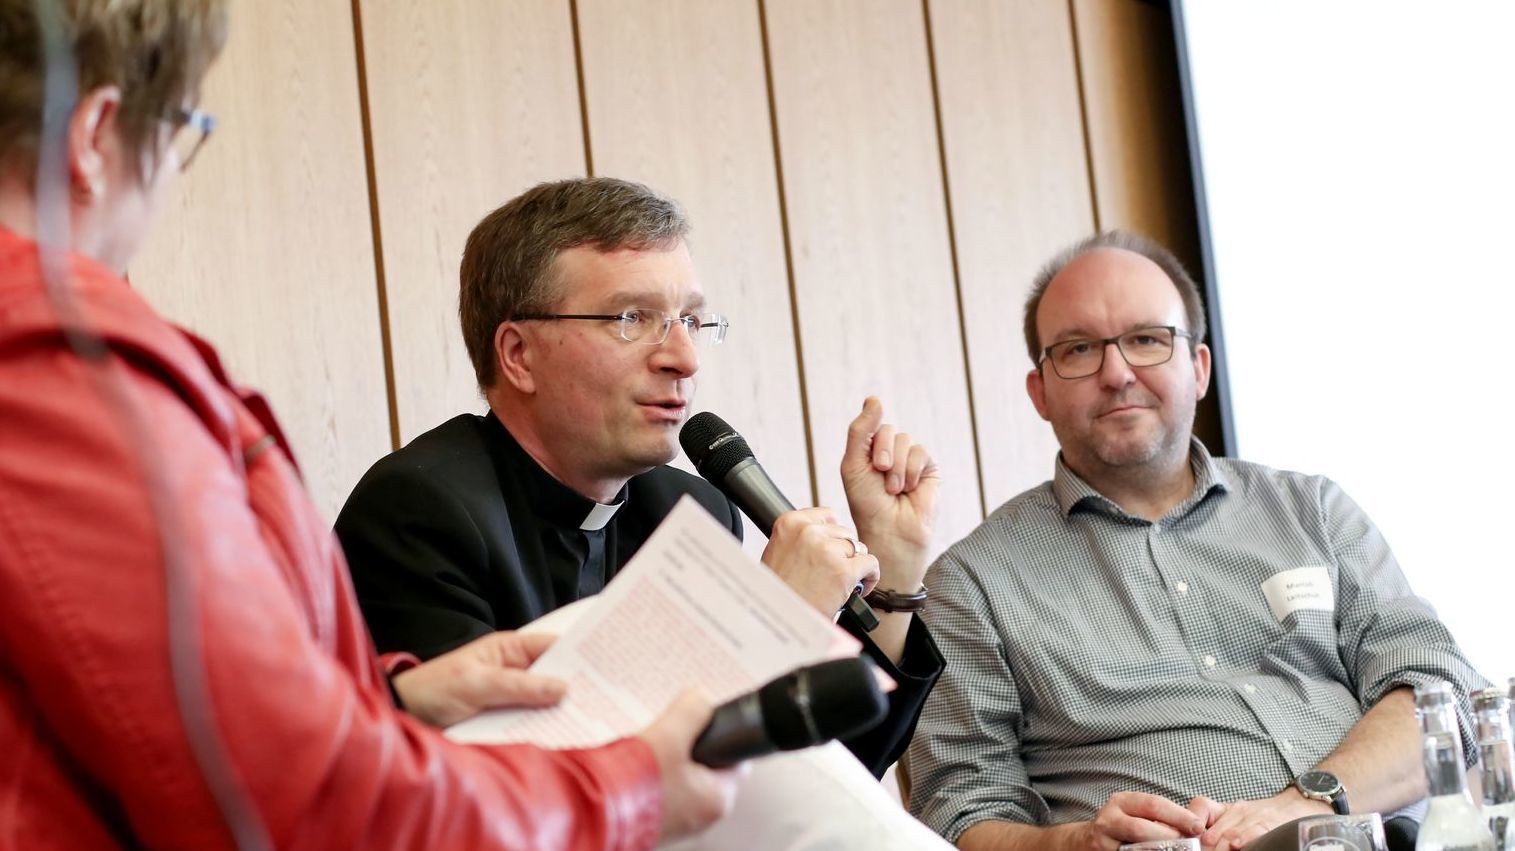 Interview (M. Lotz, Bischof Dr. Gerber, M. Leitschuh) / Fotos (© Carina Jirsch)